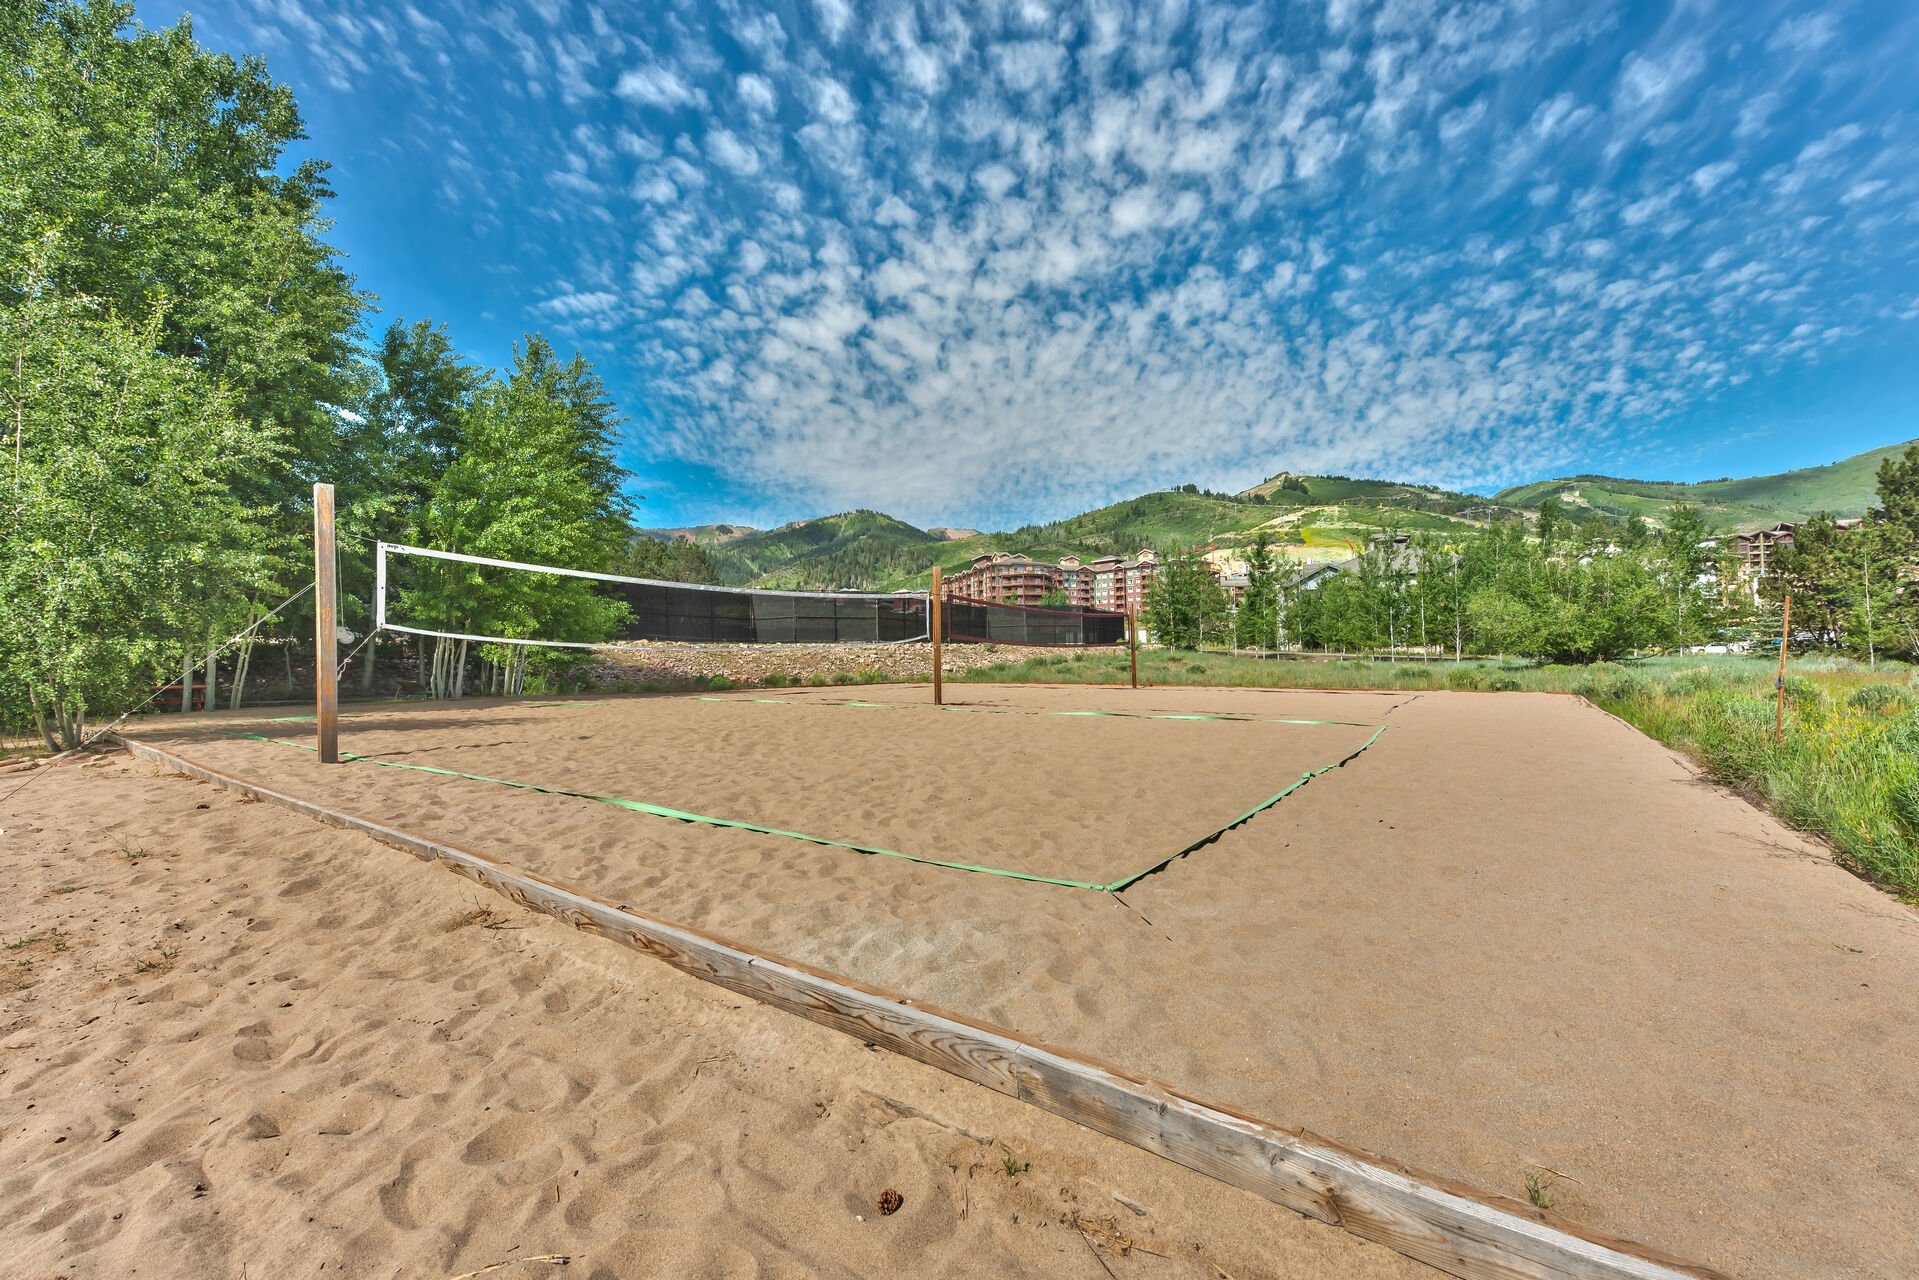 Communal sand volleyball court